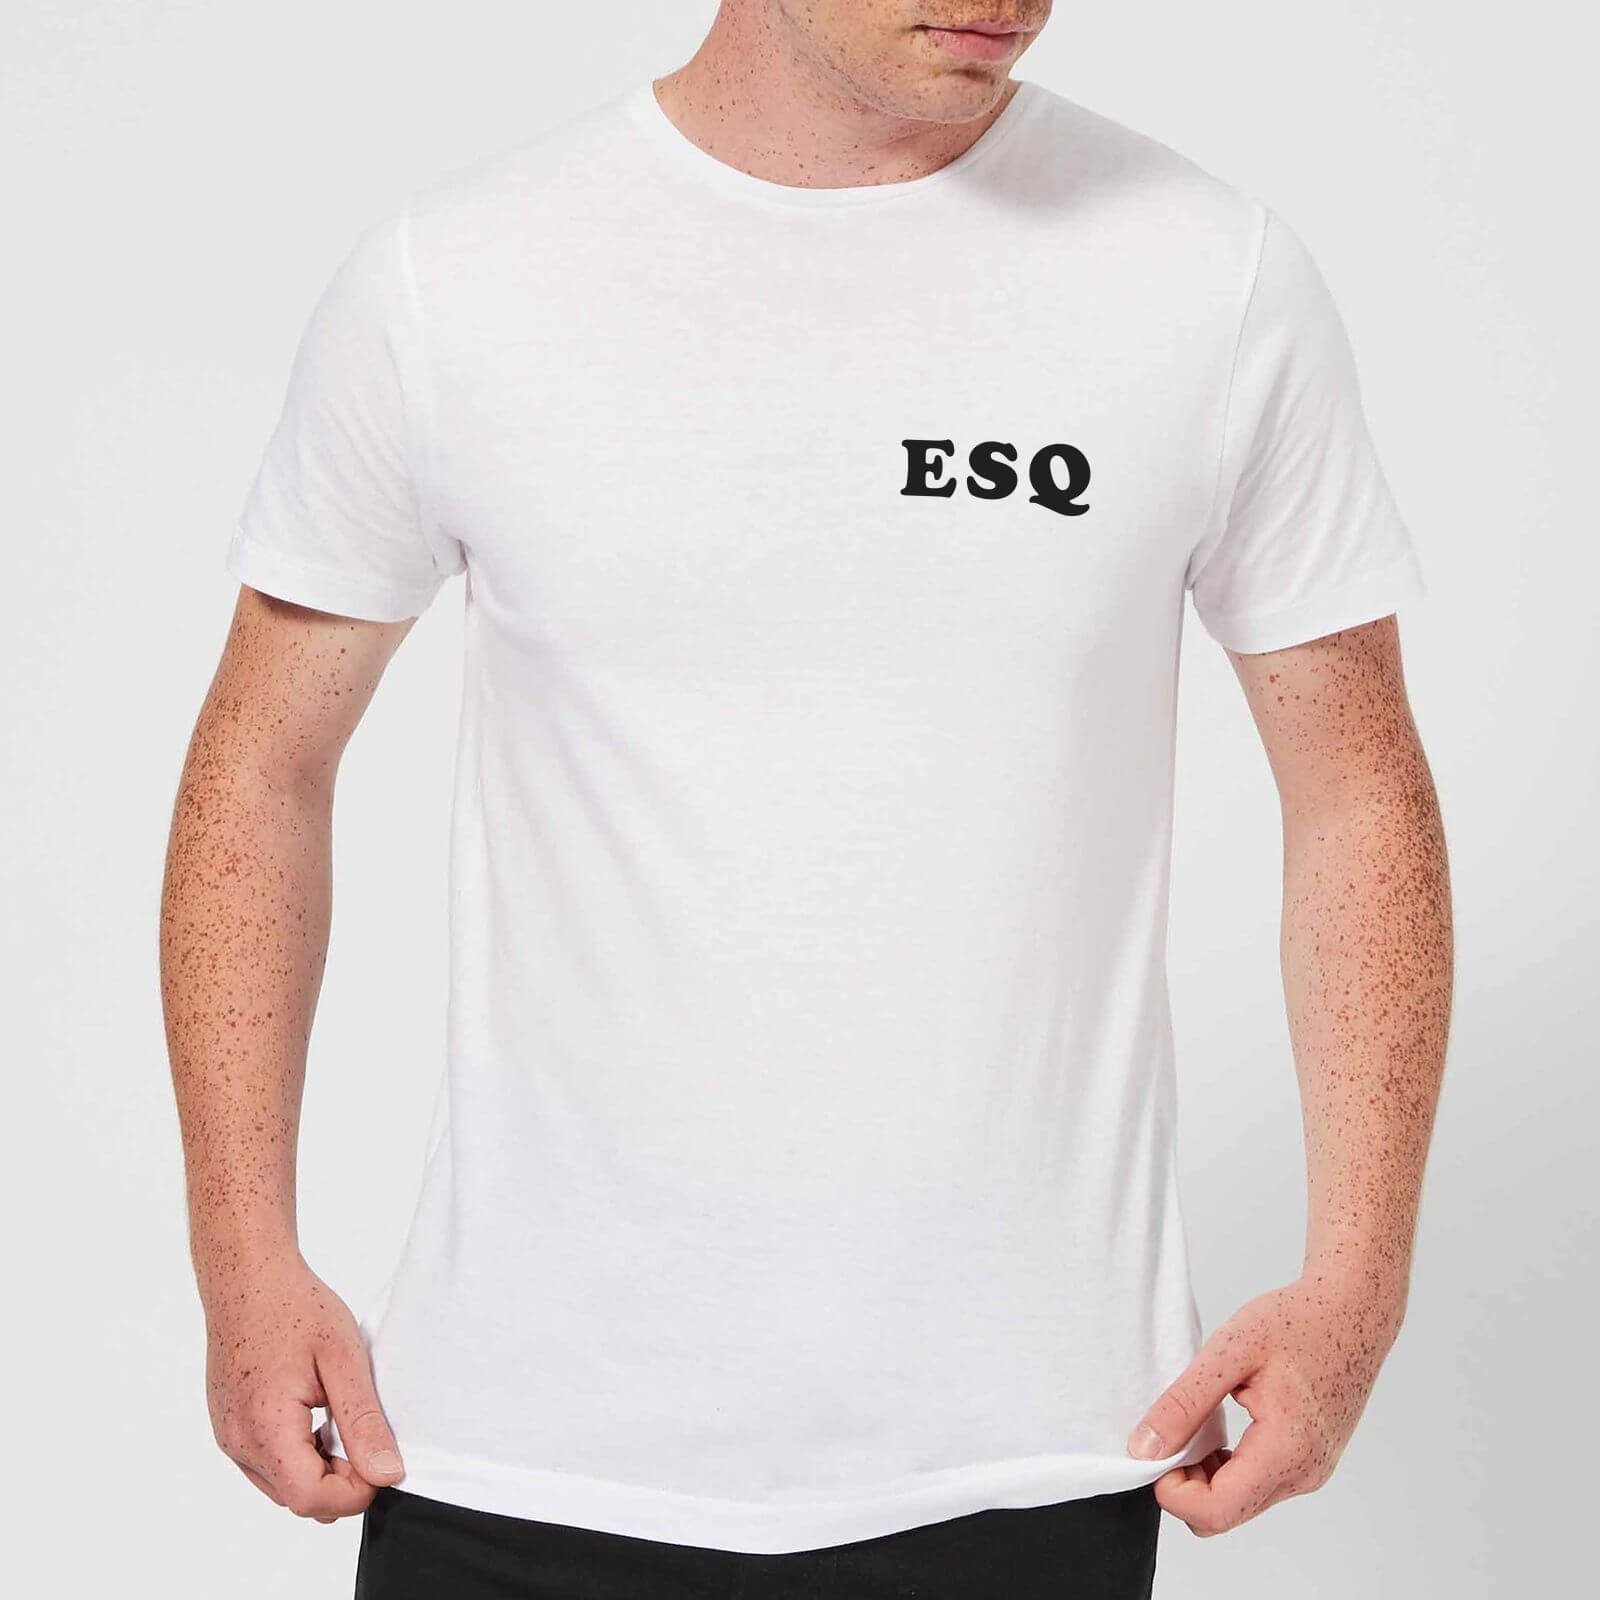 ESQ T-Shirt - White - 3XL - White